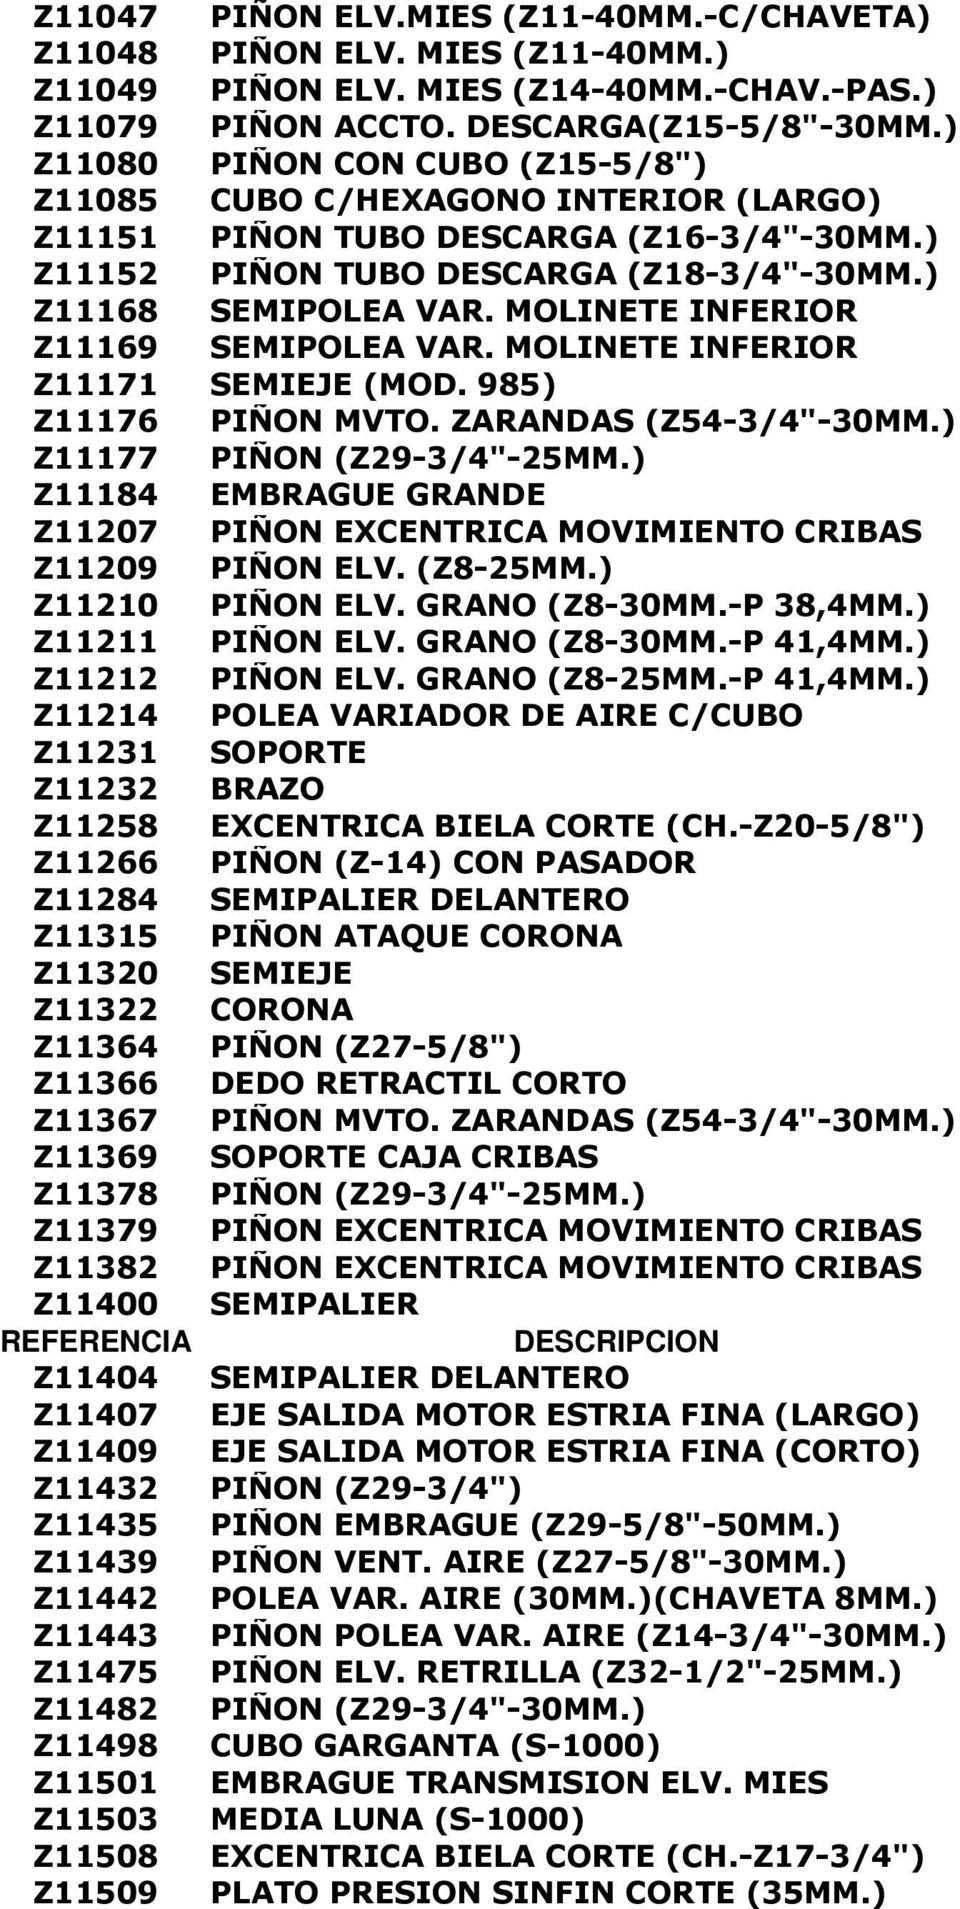 MOLINETE INFERIOR Z11169 SEMIPOLEA VAR. MOLINETE INFERIOR Z11171 SEMIEJE (MOD. 985) Z11176 PIÑON MVTO. ZARANDAS (Z54-3/4"-30MM.) Z11177 PIÑON (Z29-3/4"-25MM.